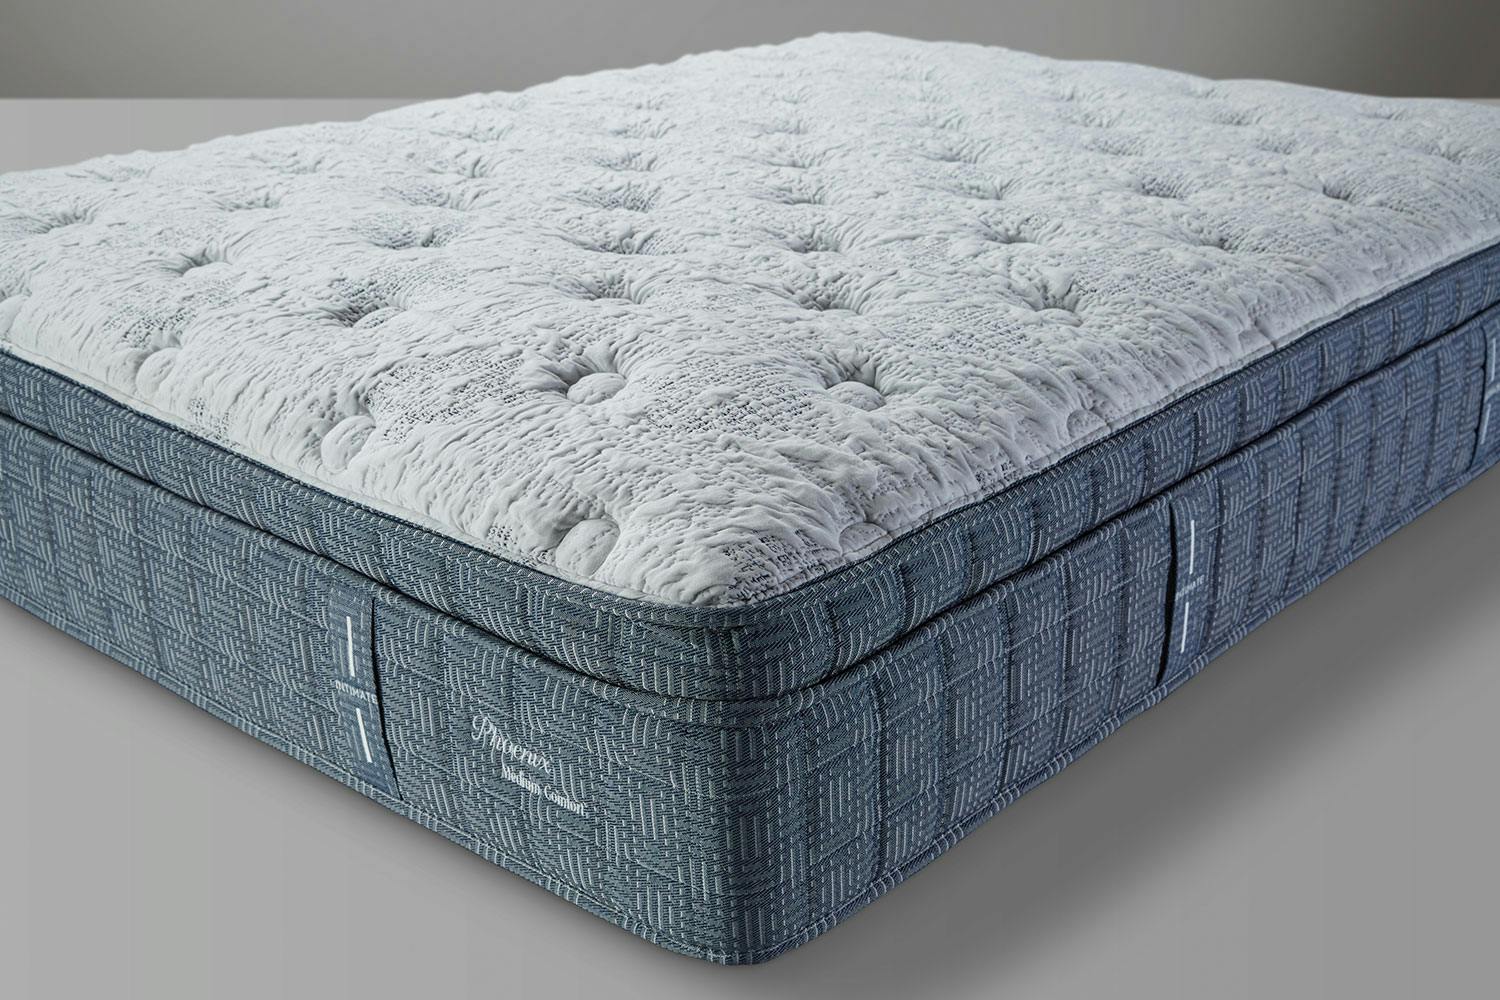 queen mattress for sale walmart